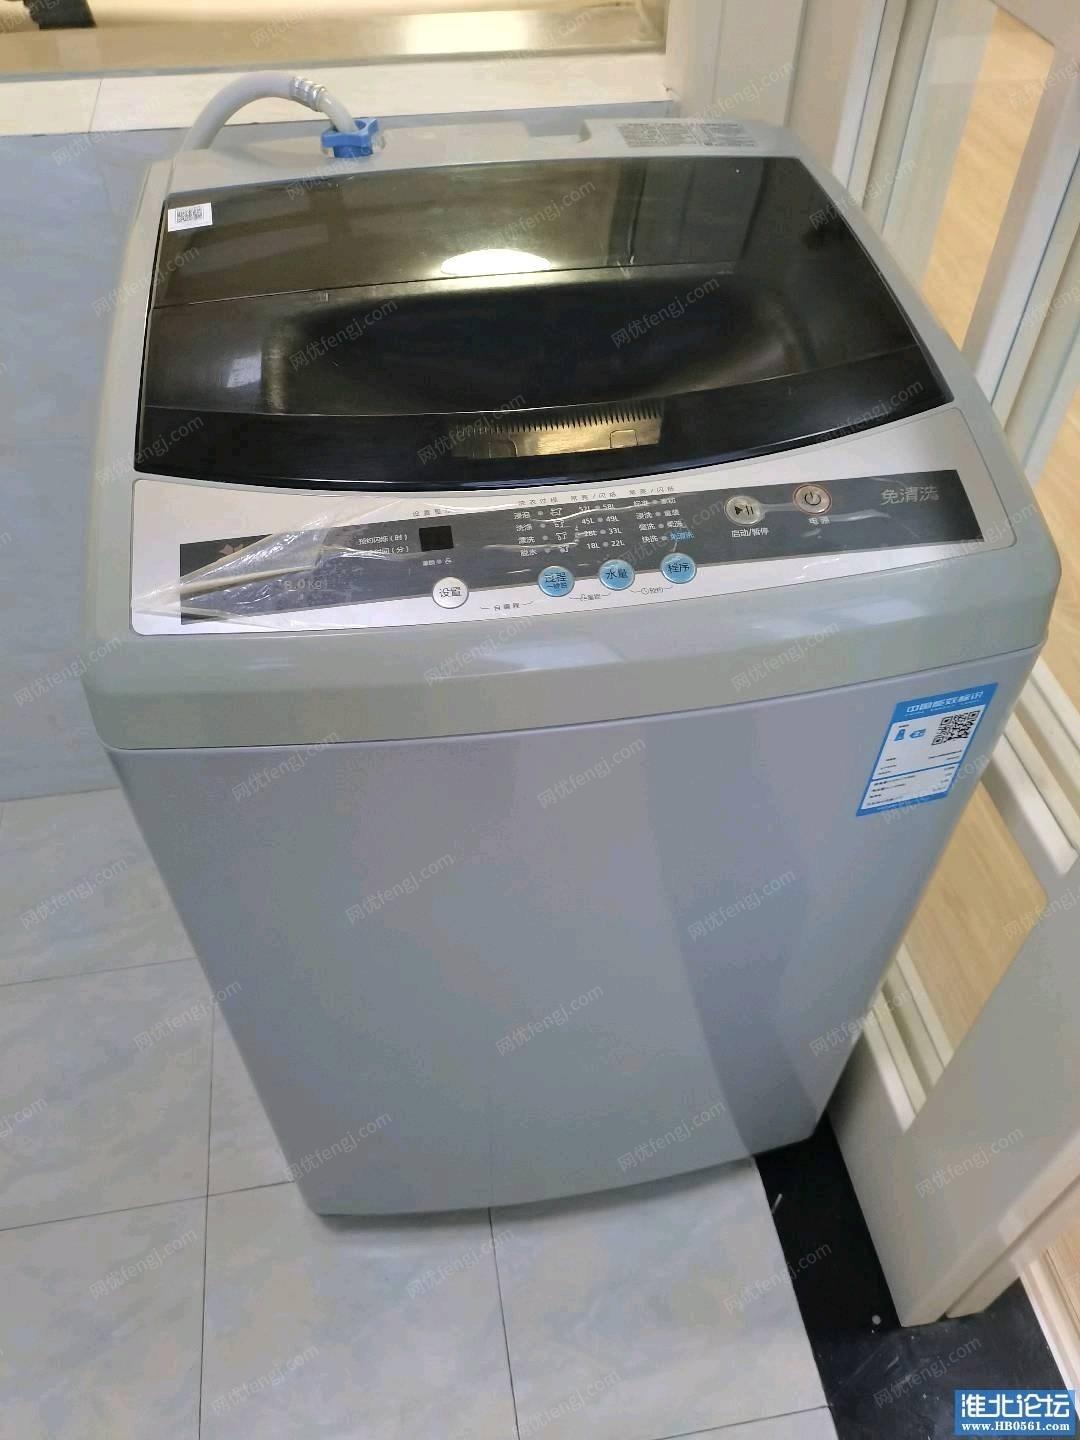 安徽淮北9成新二手洗衣机低价出售